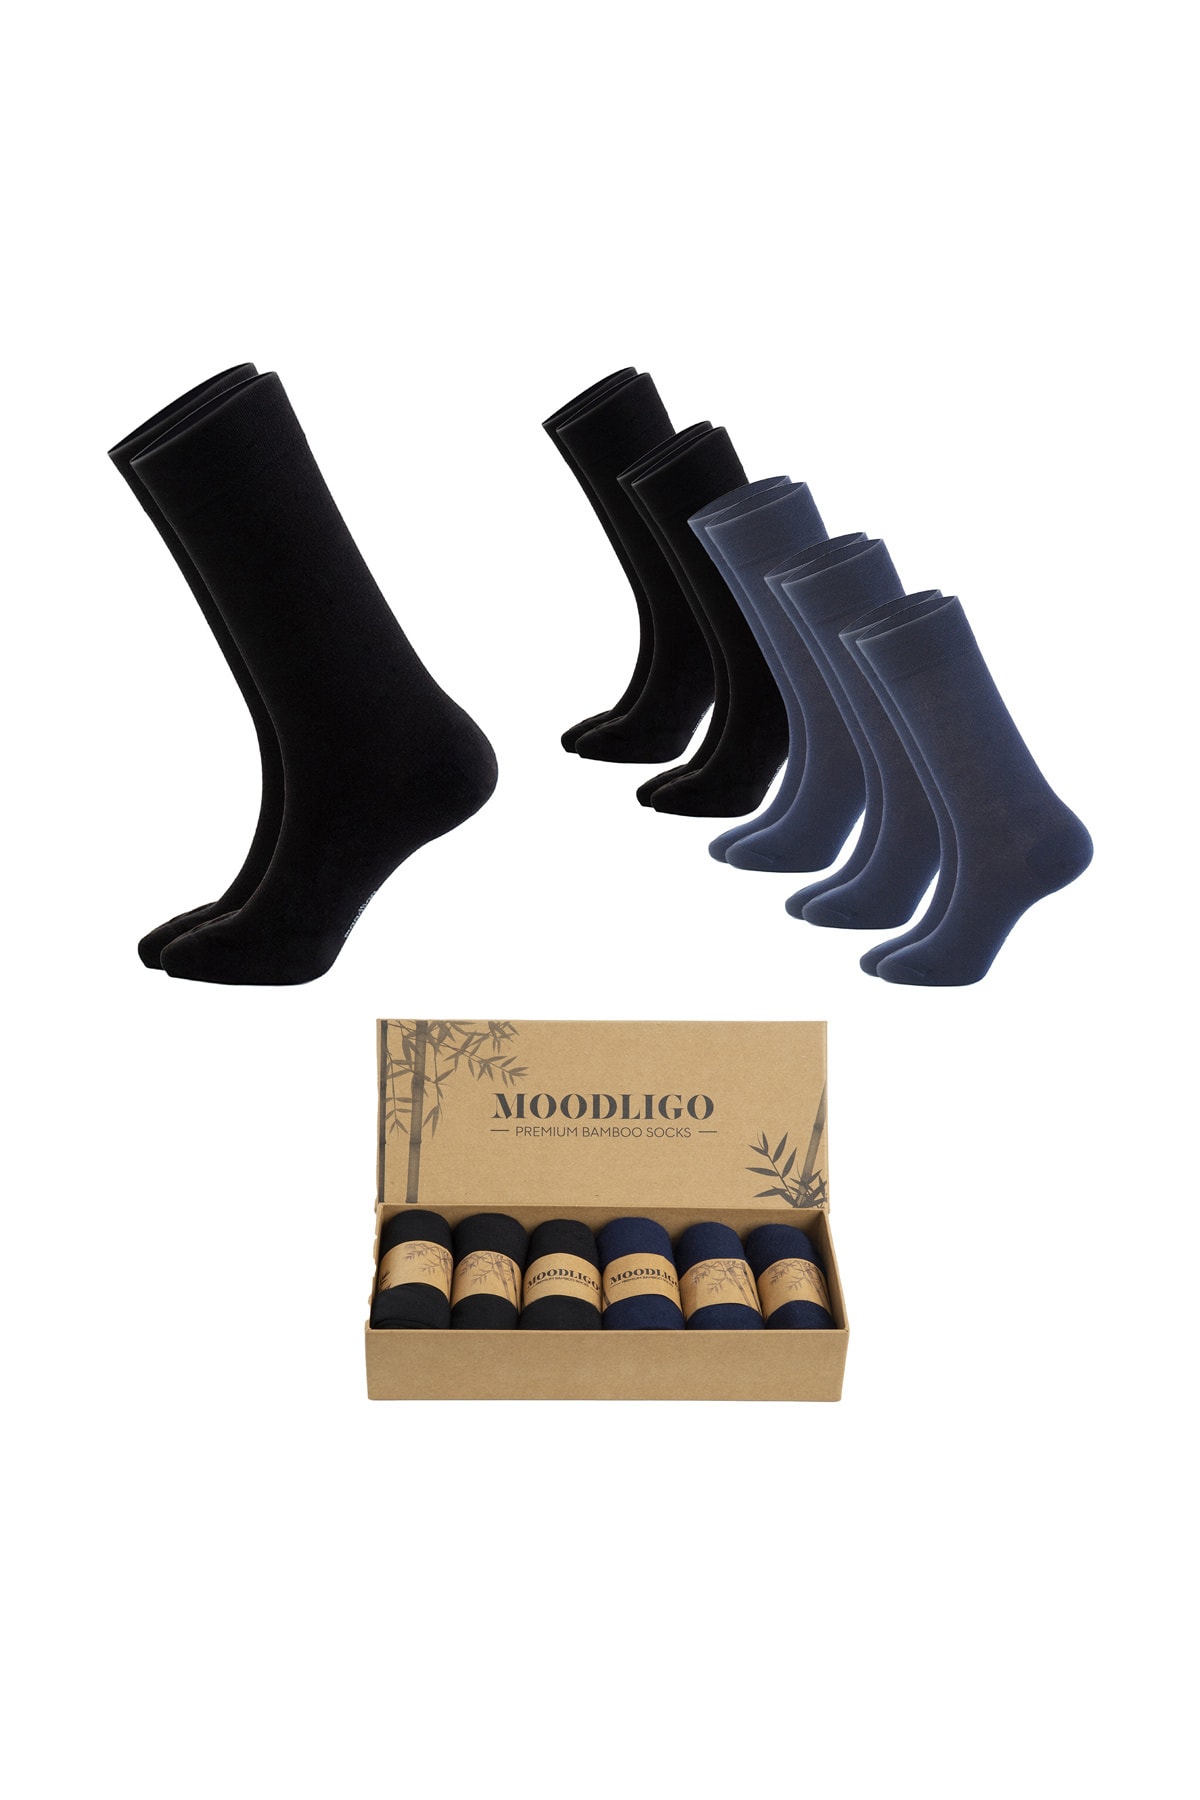 Moodligo Erkek 6'lı Premium Bambu Soket Çorap - 3 Siyah 3 Lacivert - Kutulu